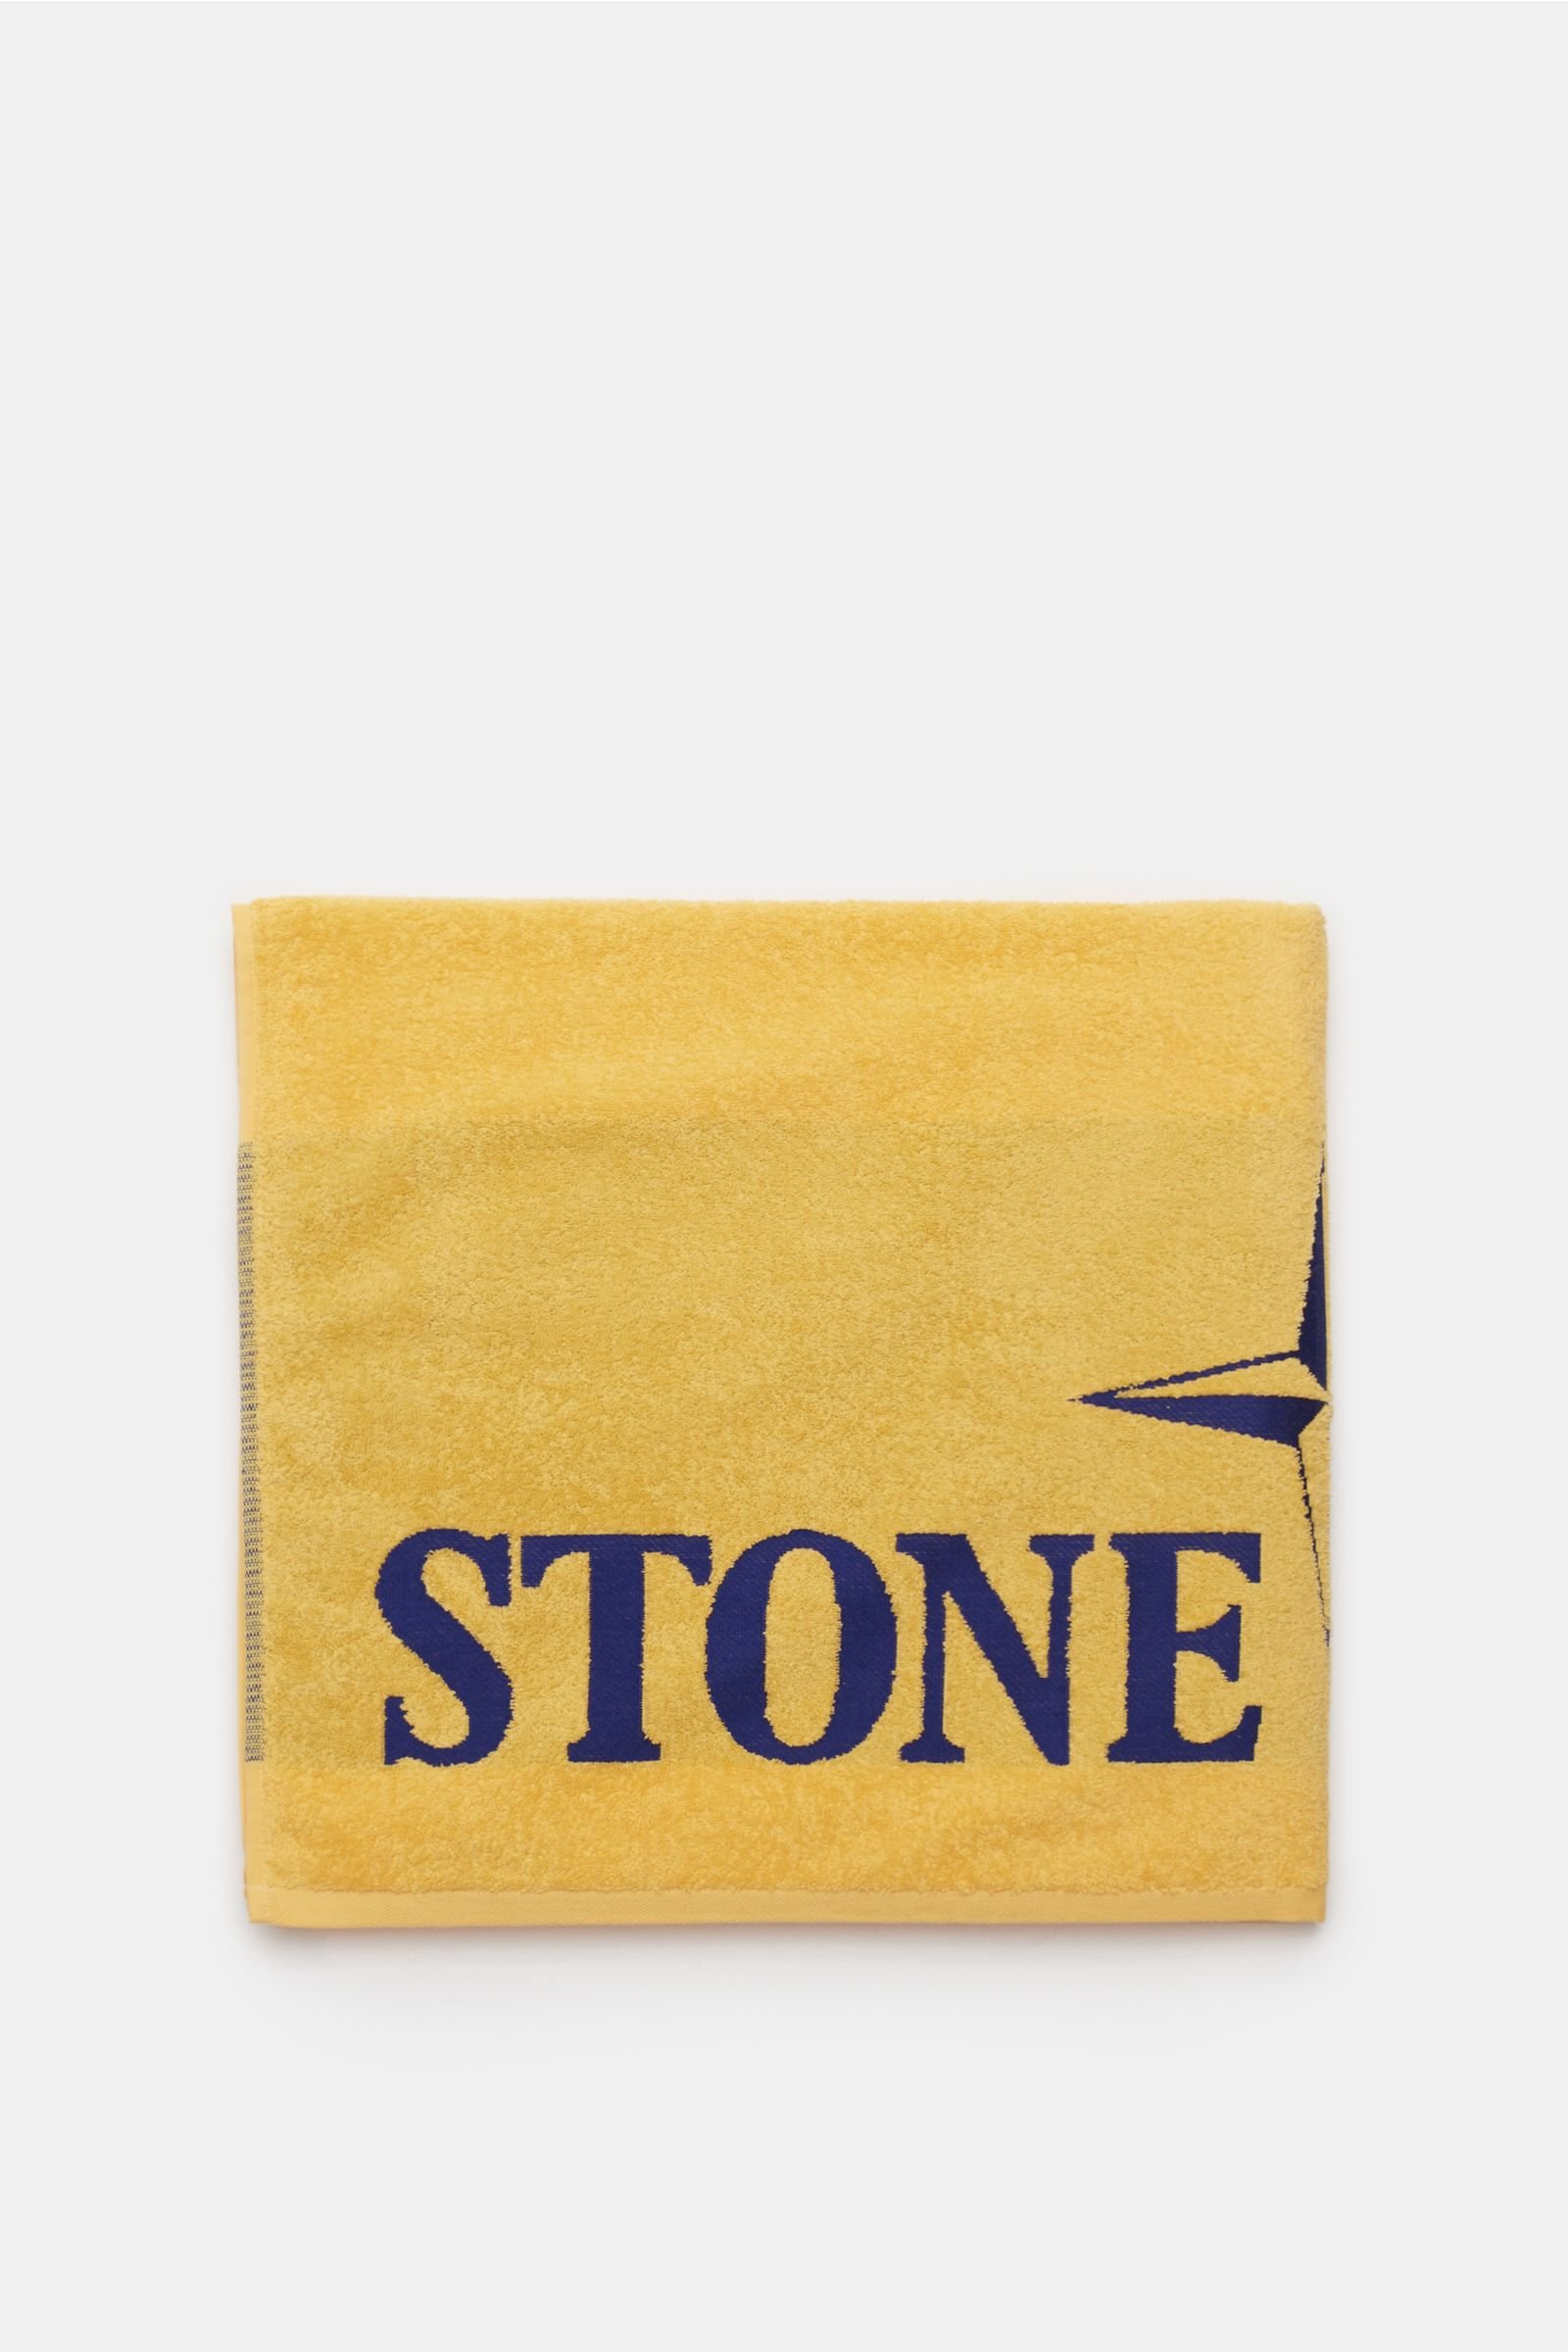 Bathing towel yellow